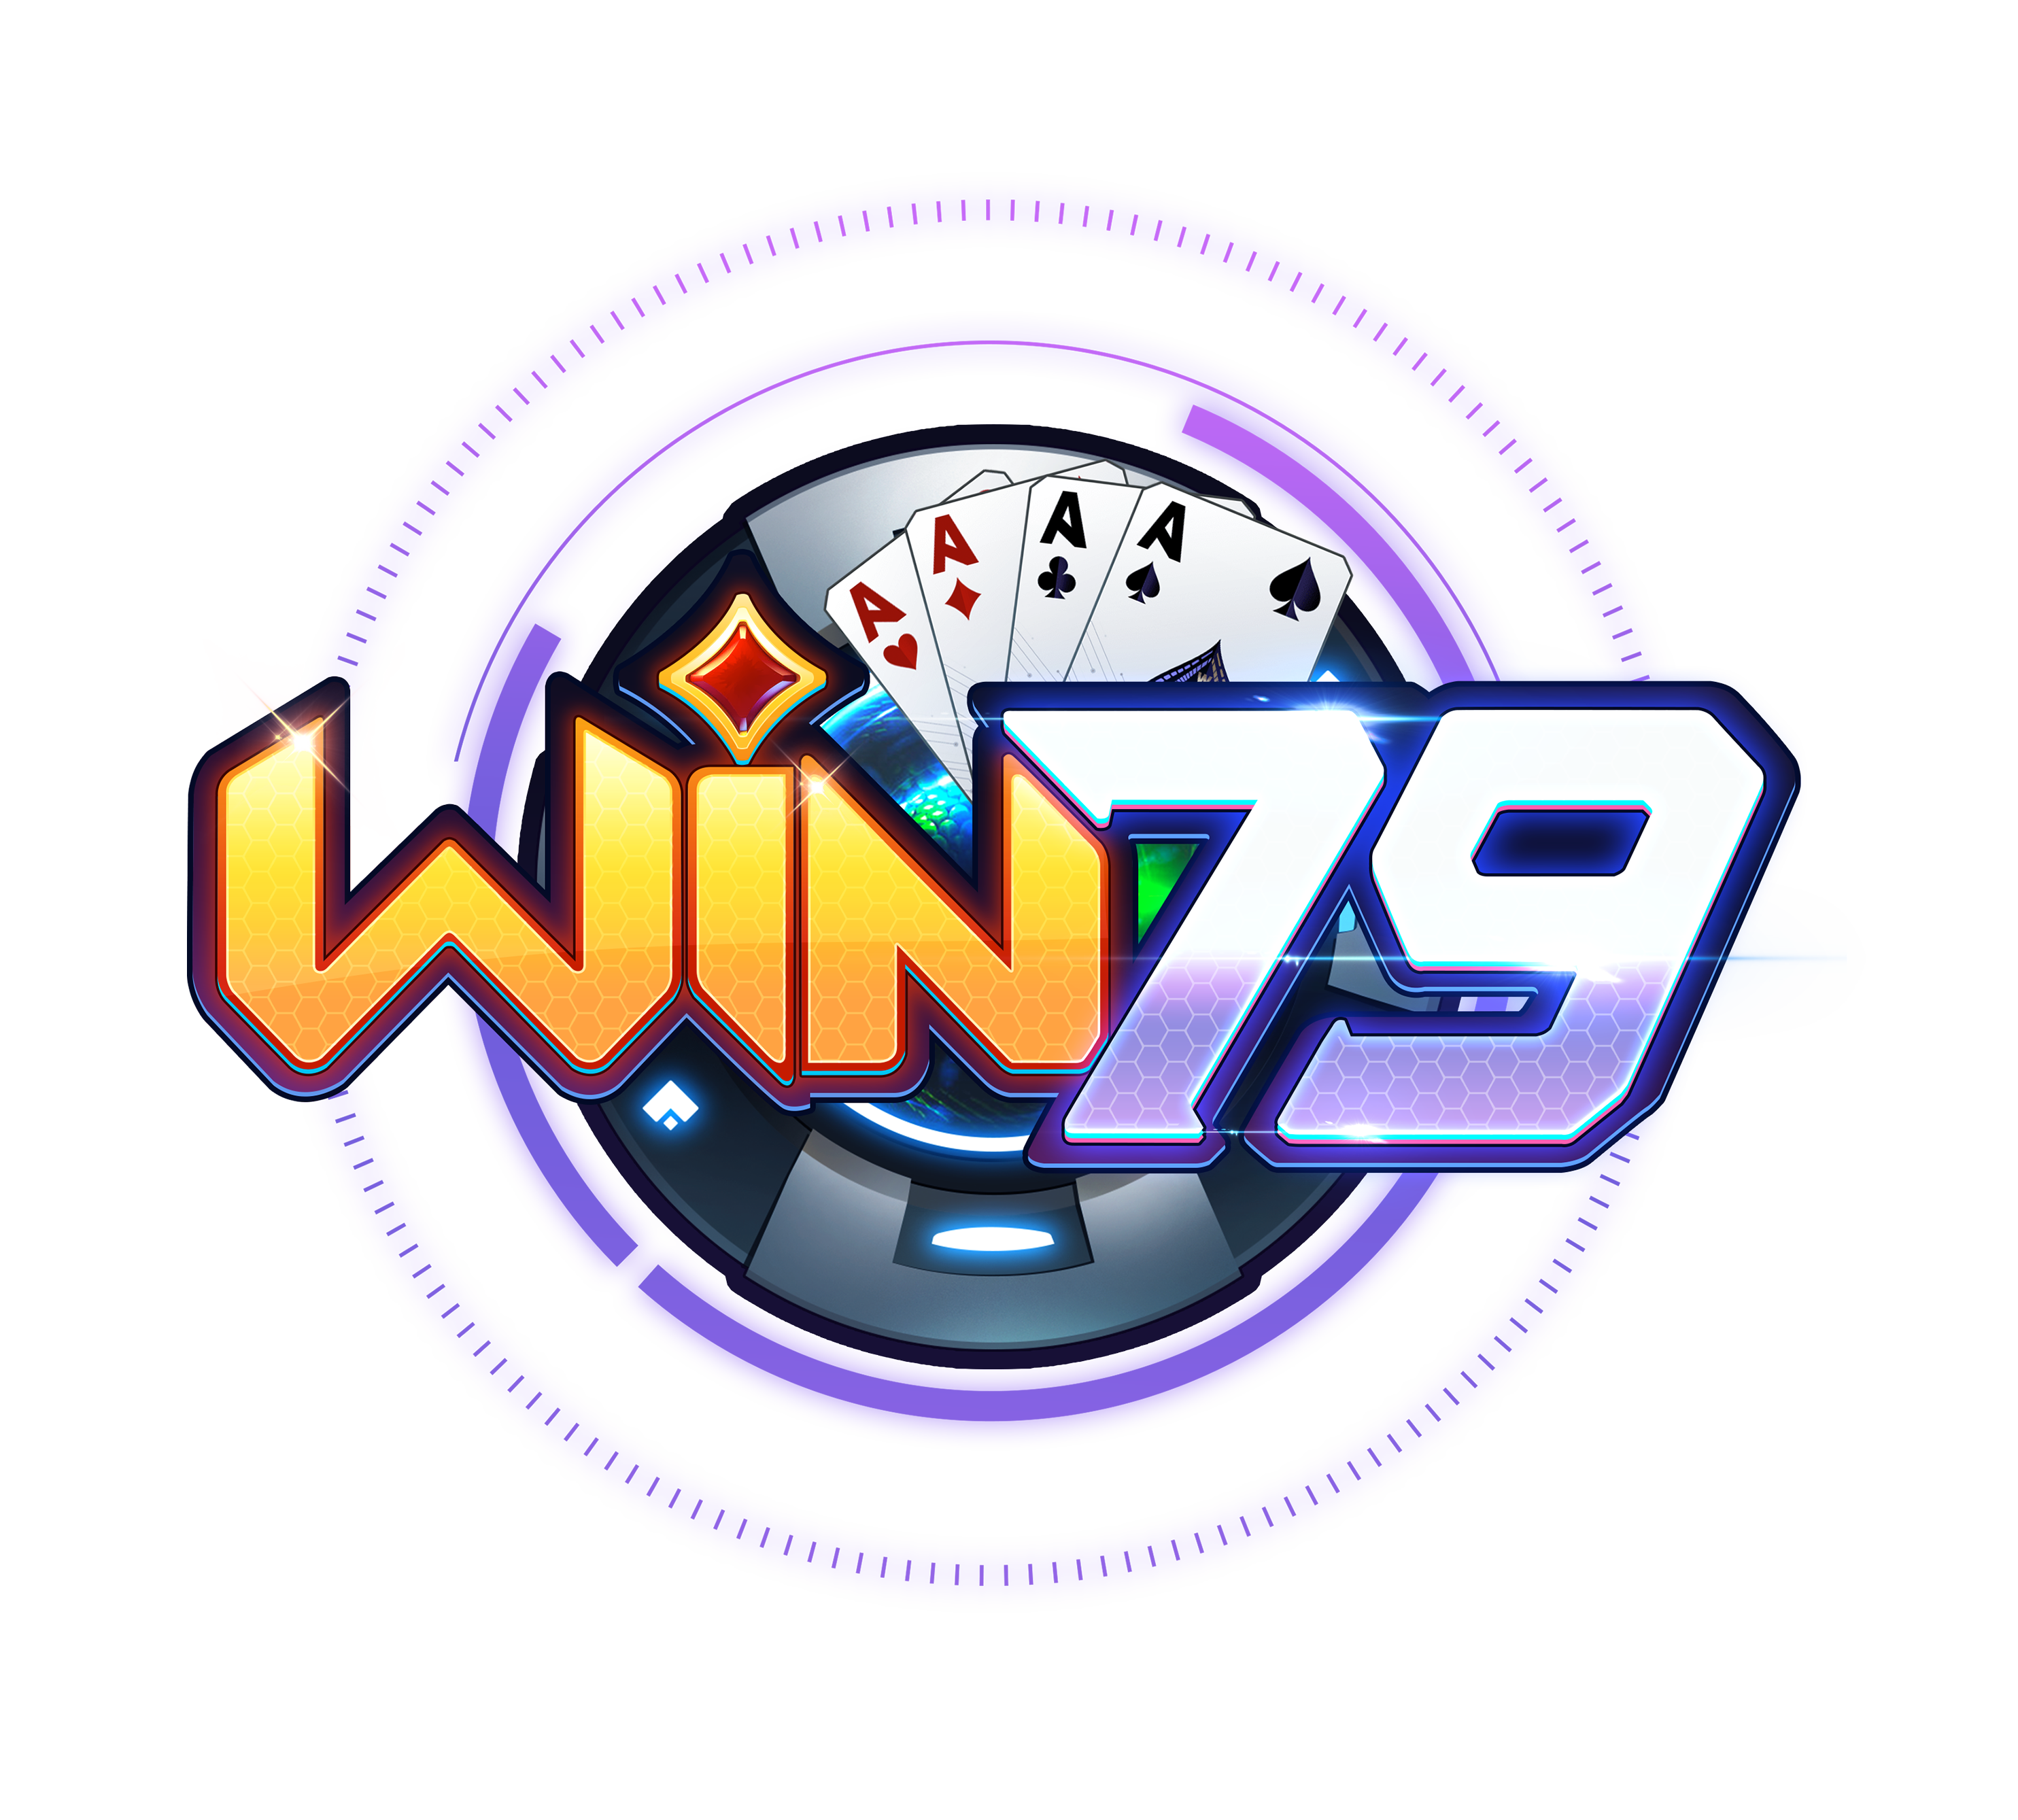 đăng ký win79 với logo nhà cái đẹp mắt